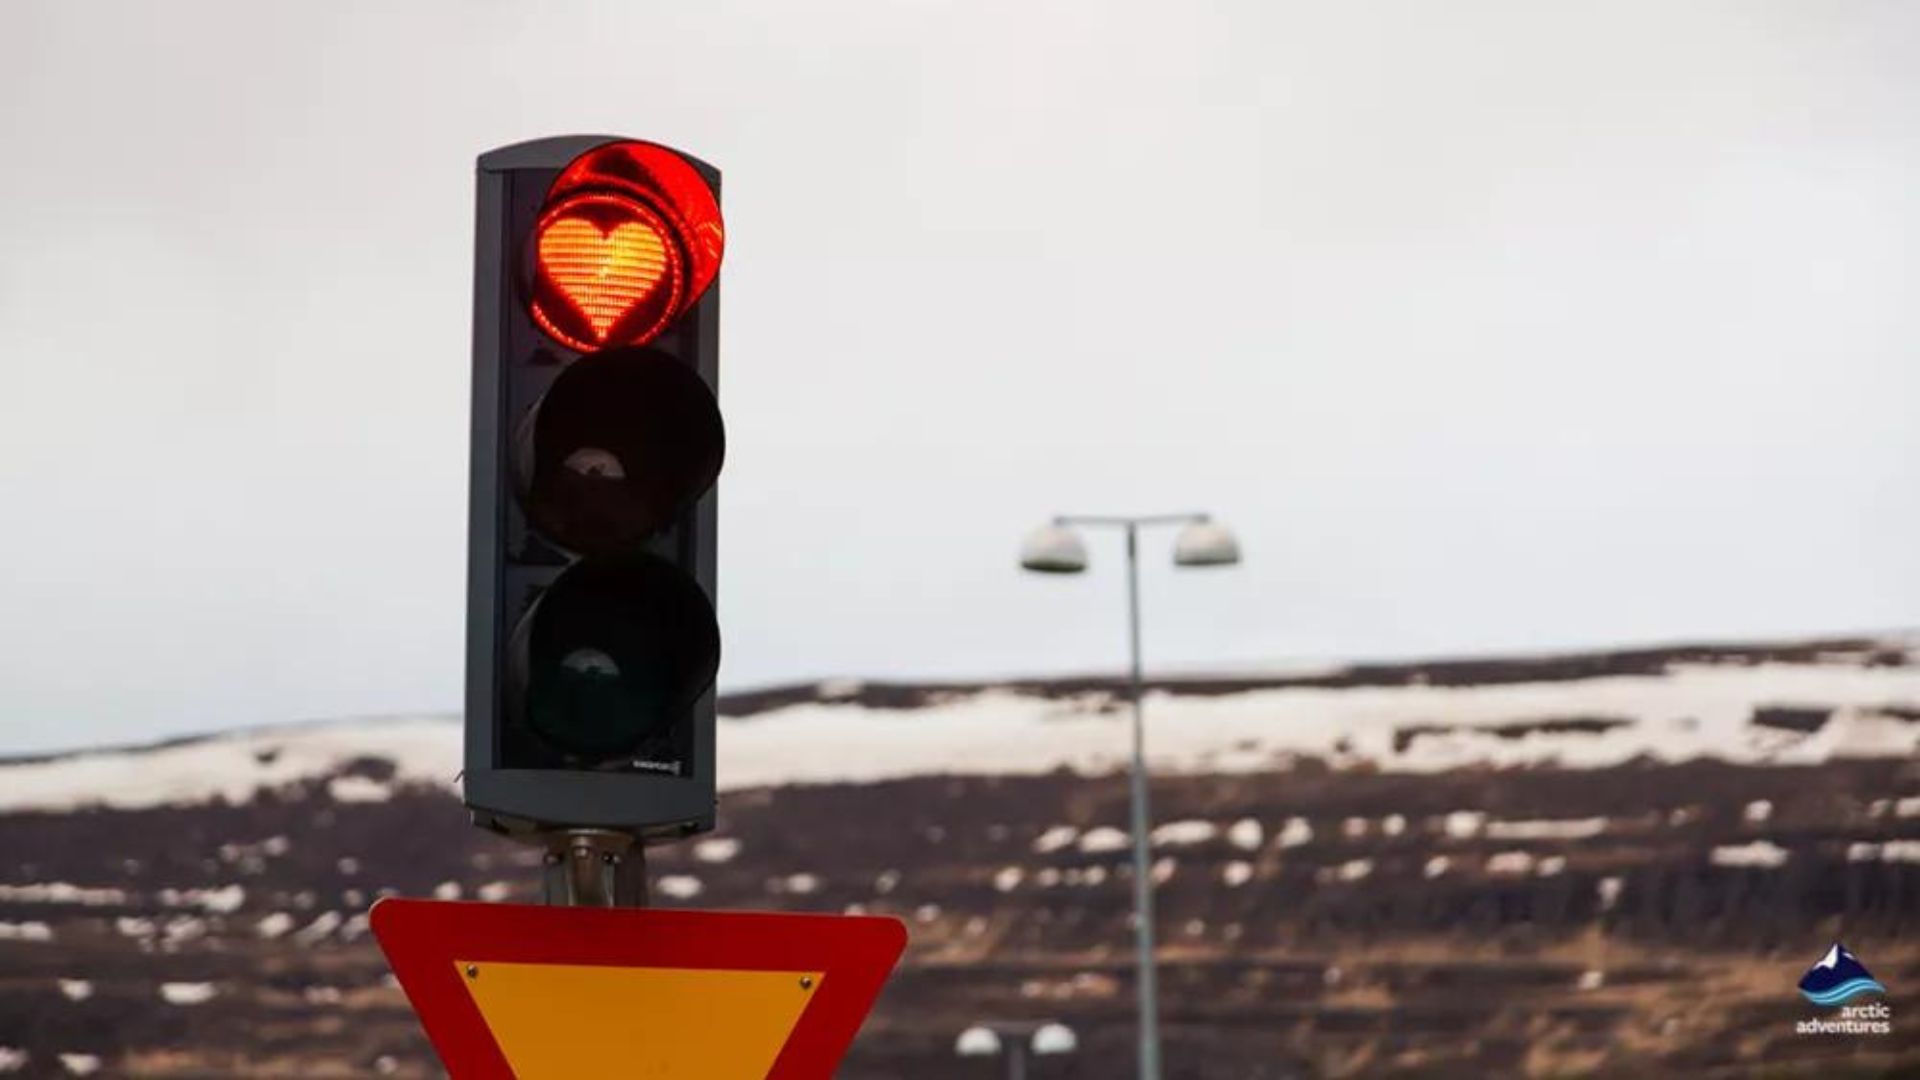 Traffic lights in Akureyri